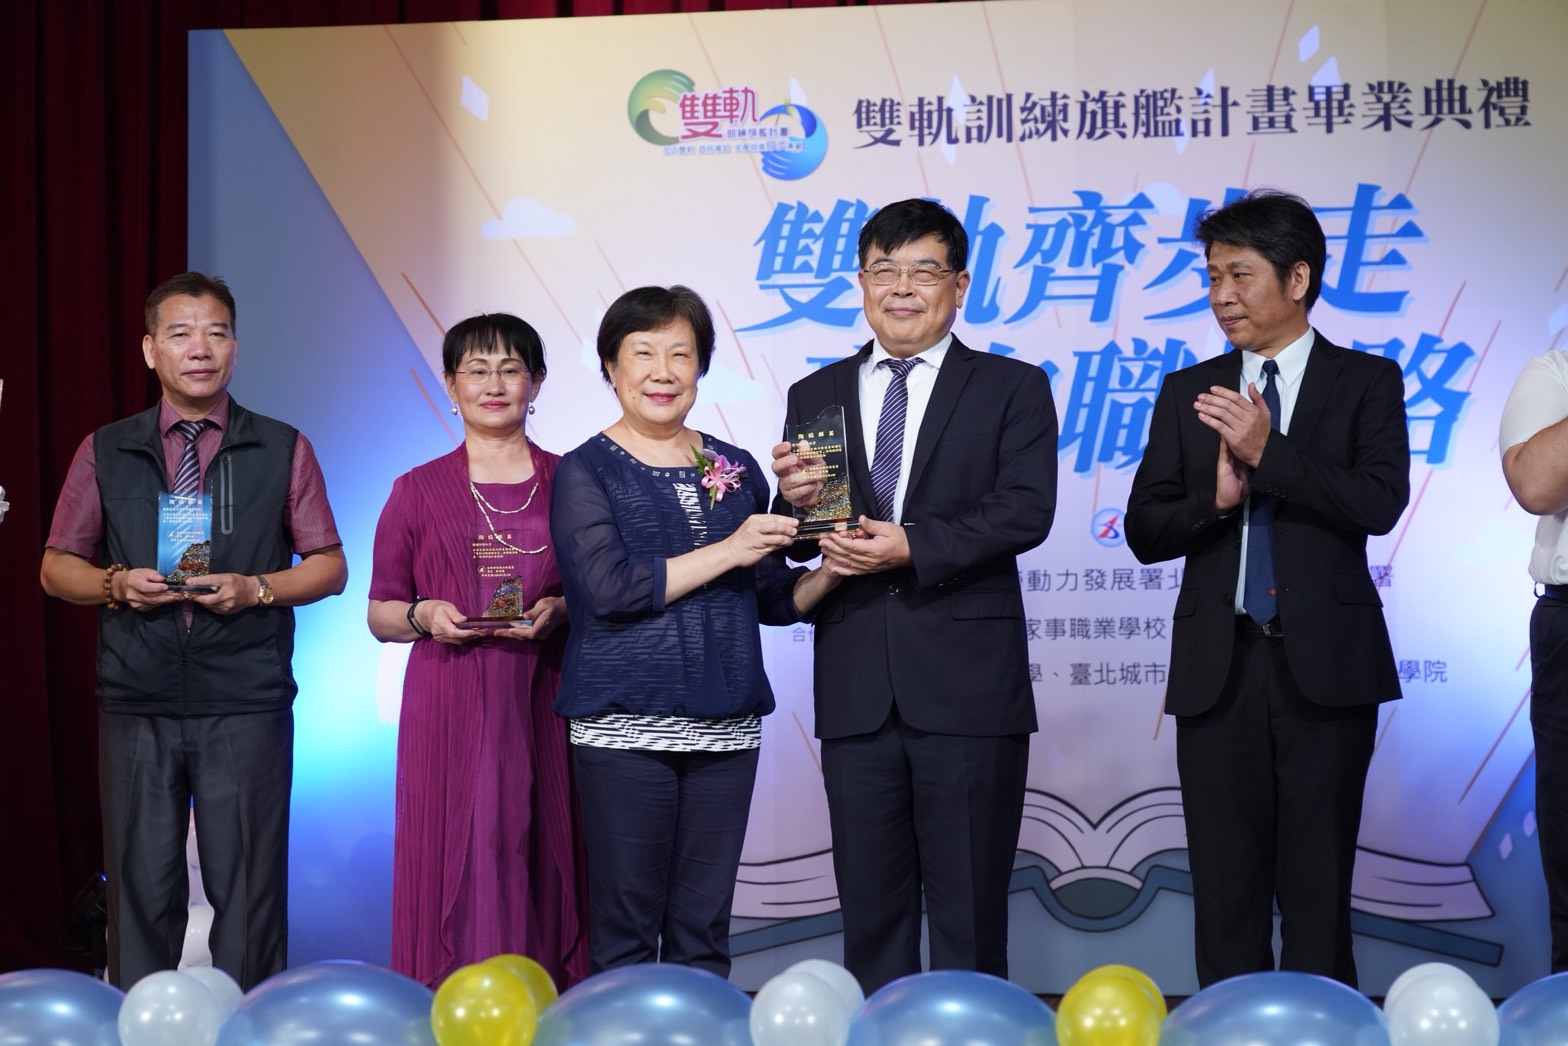 勞動力發展署署長黃秋桂（左三）頒發獎座給徐祥禎副校長（右二），表揚合作學校對培育人才所付出的努力